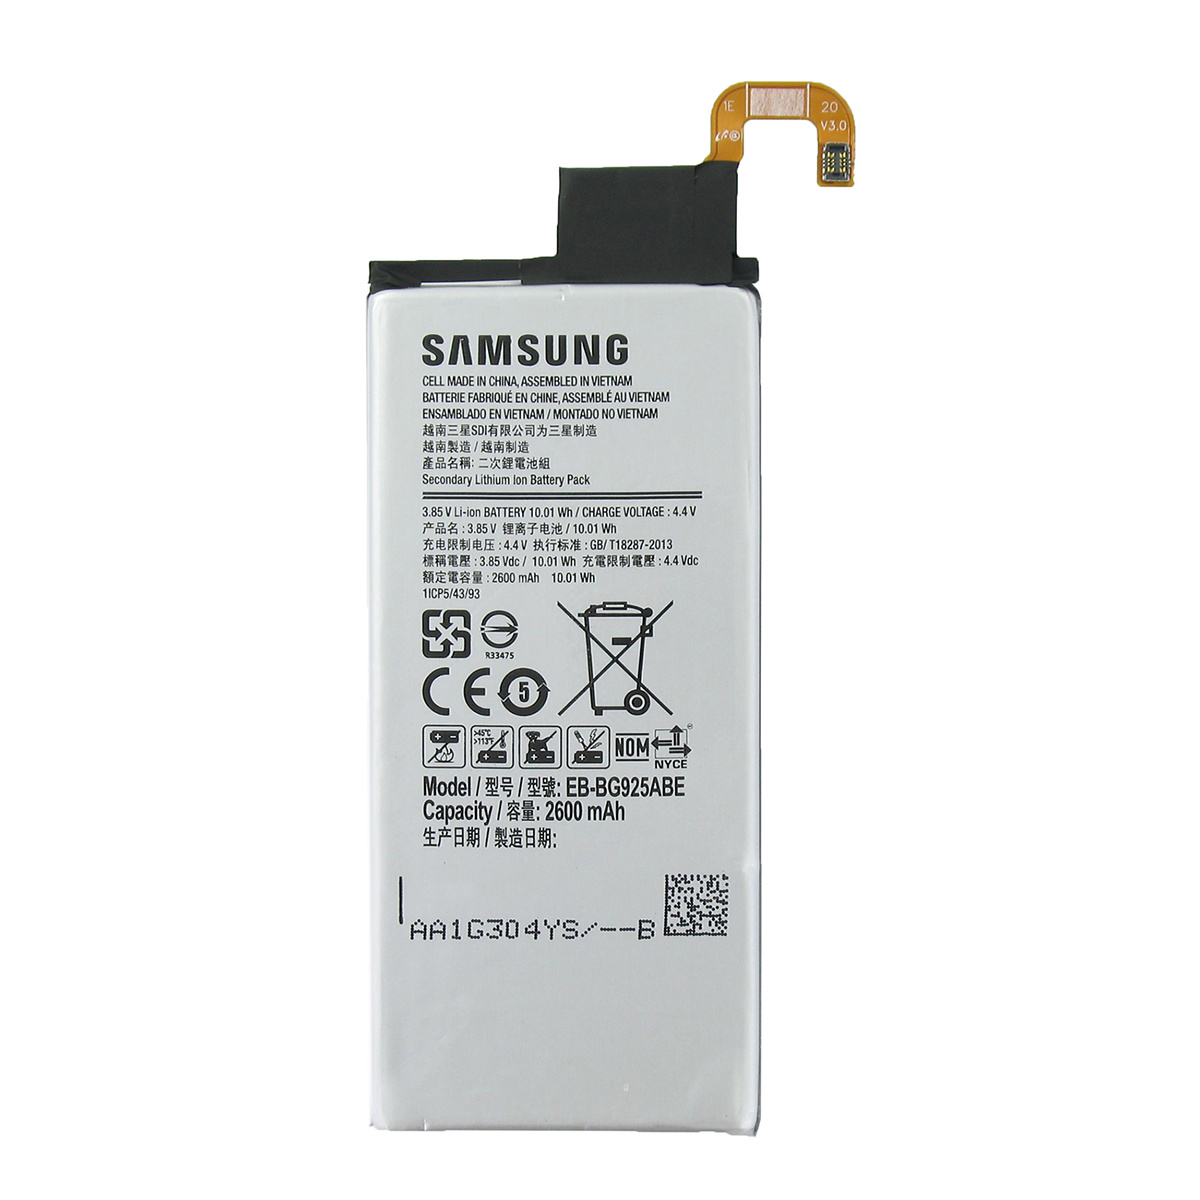 Samsung S6 Edge original batteri, 2600mAh, EB-BG925ABE